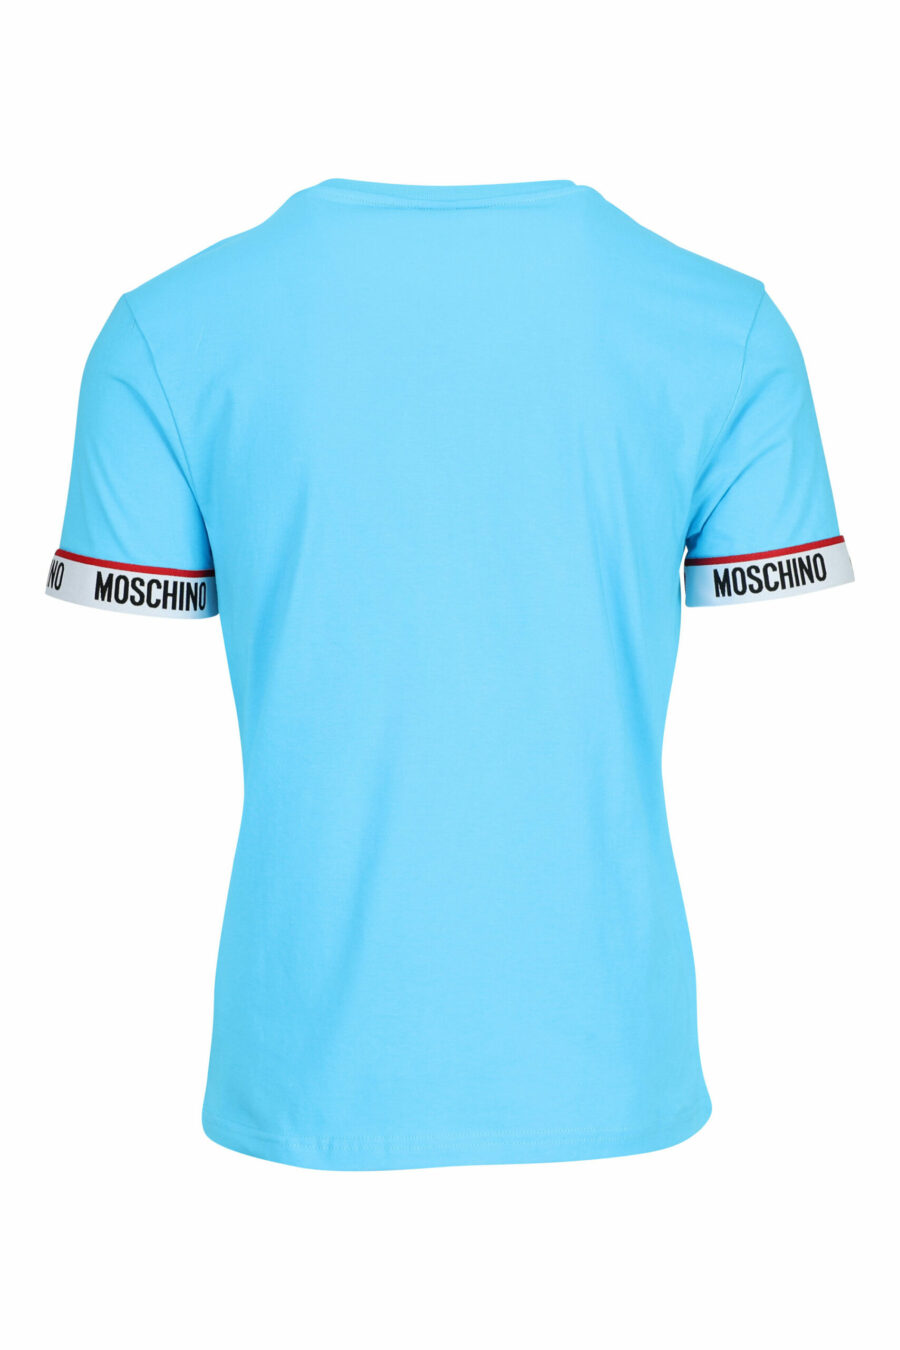 T-shirt bleu clair avec logo blanc sur les manches - 667113604626 1 scaled